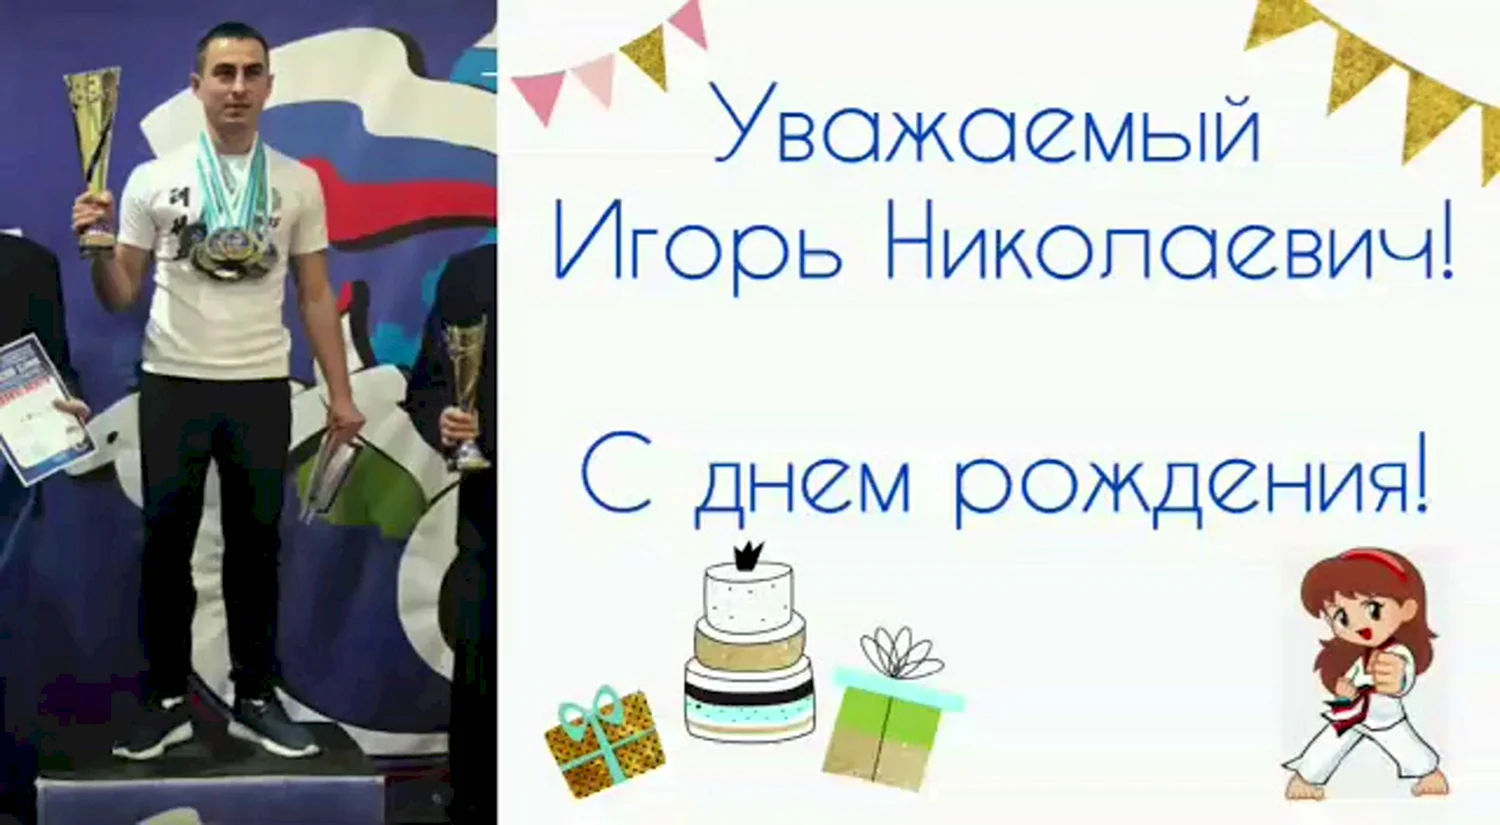 Игорь Николаевич с днем рождения